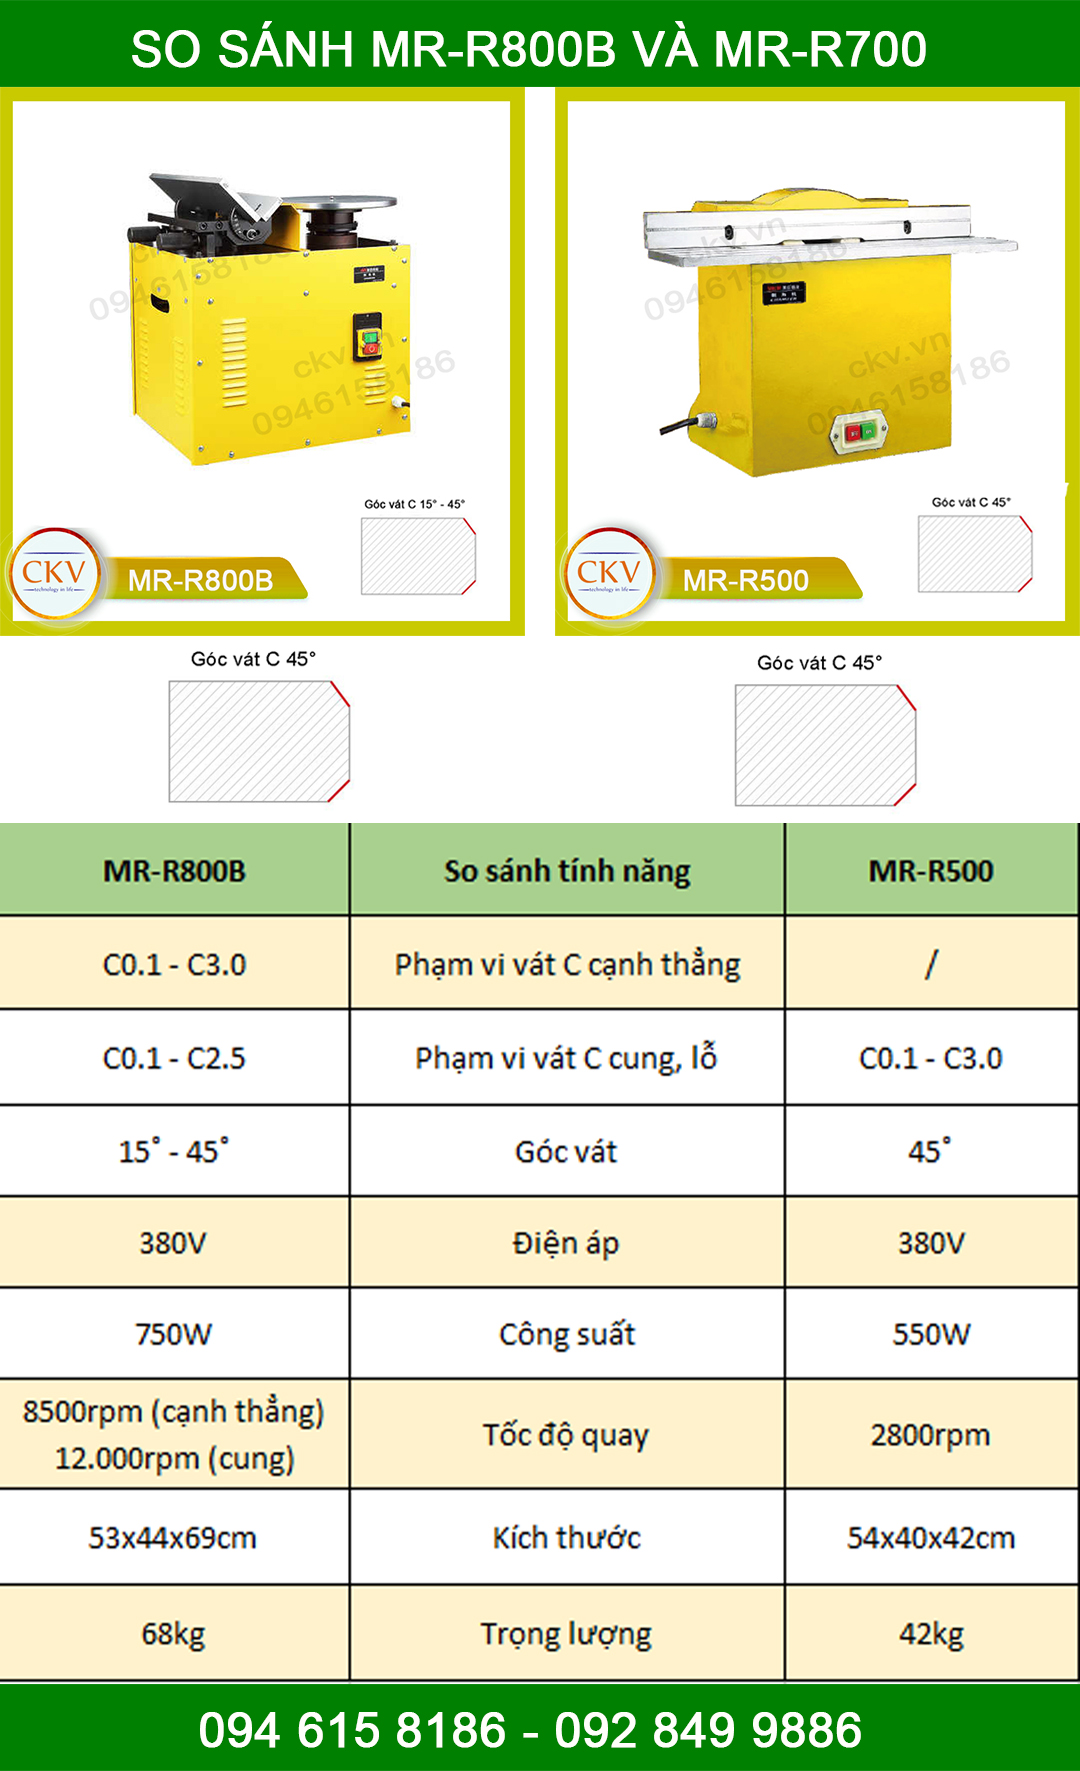 So sánh MR-R800B và MR-R500